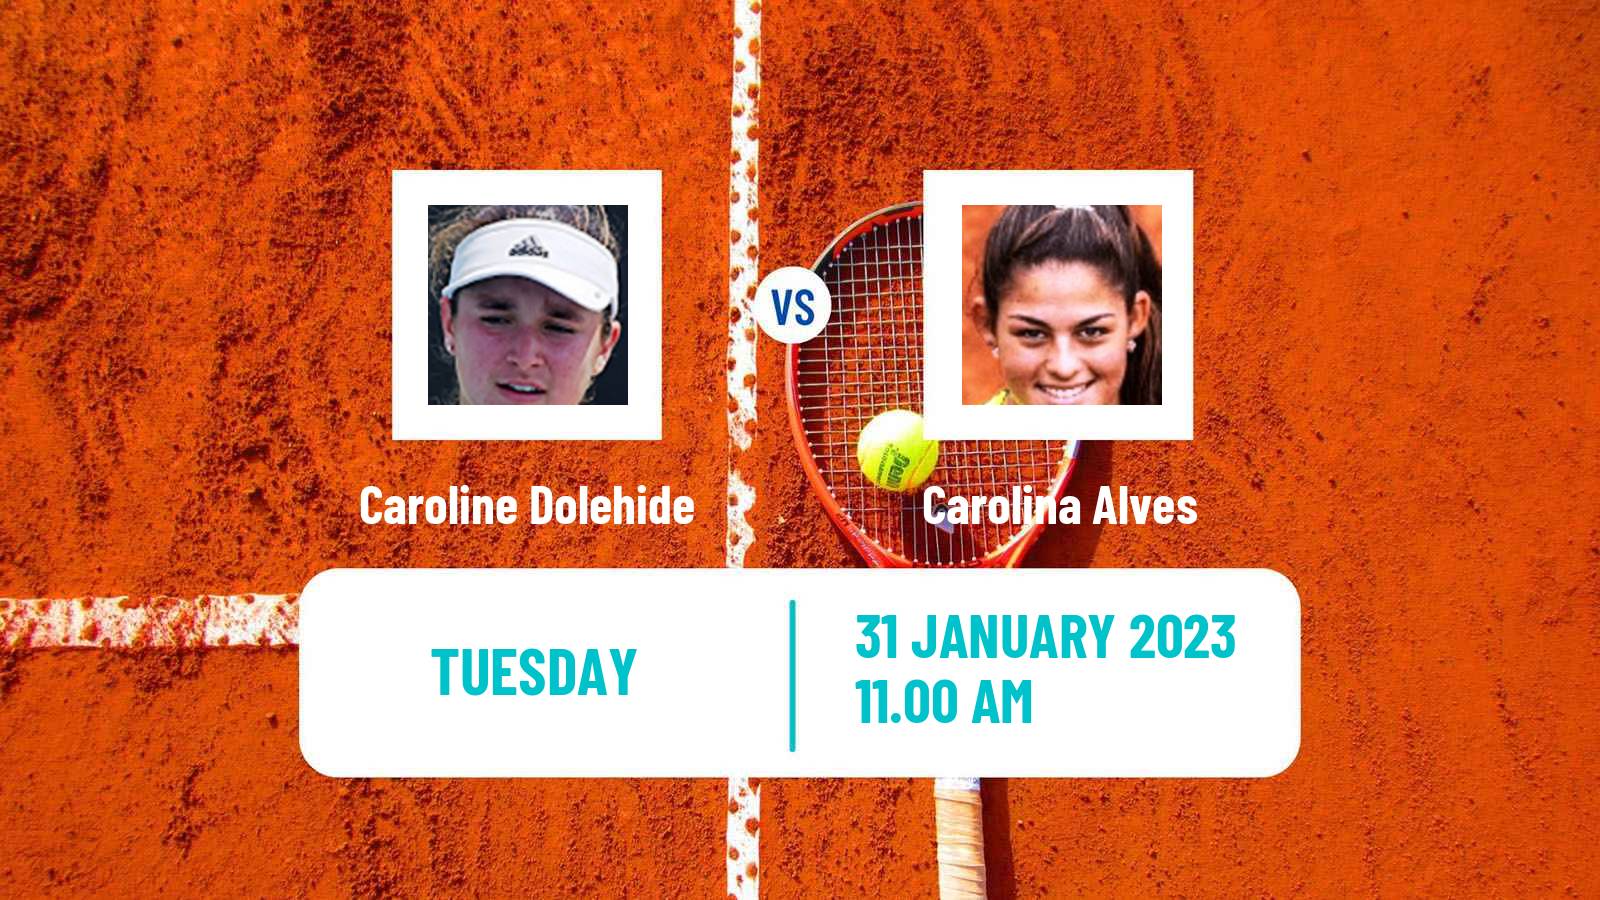 Tennis ATP Challenger Caroline Dolehide - Carolina Alves